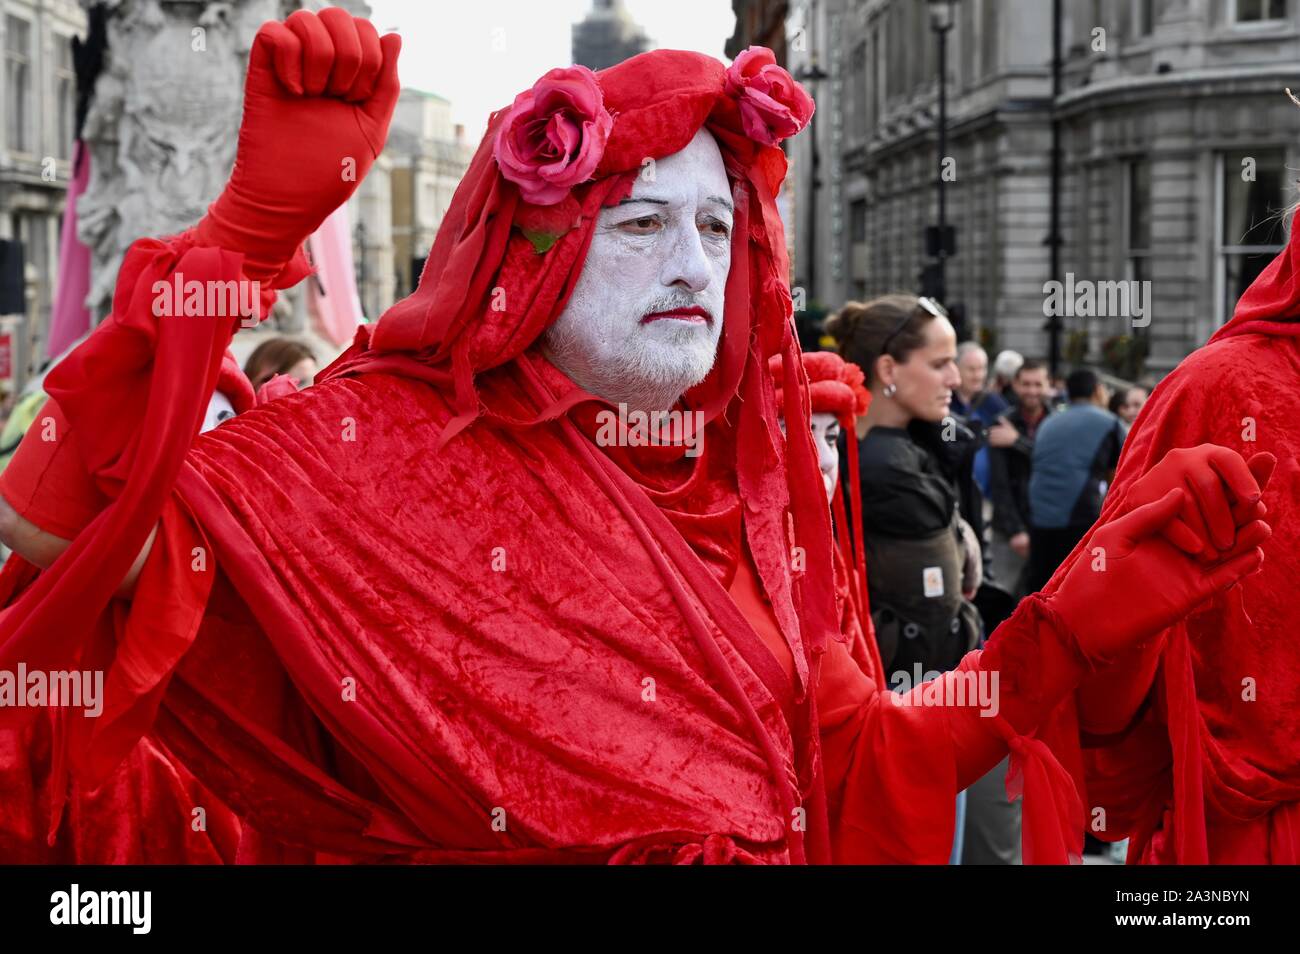 Brigade rouge Performance Group, rébellion Extinction, troisième jour de protestation, Trafalgar Square, Londres. UK Banque D'Images